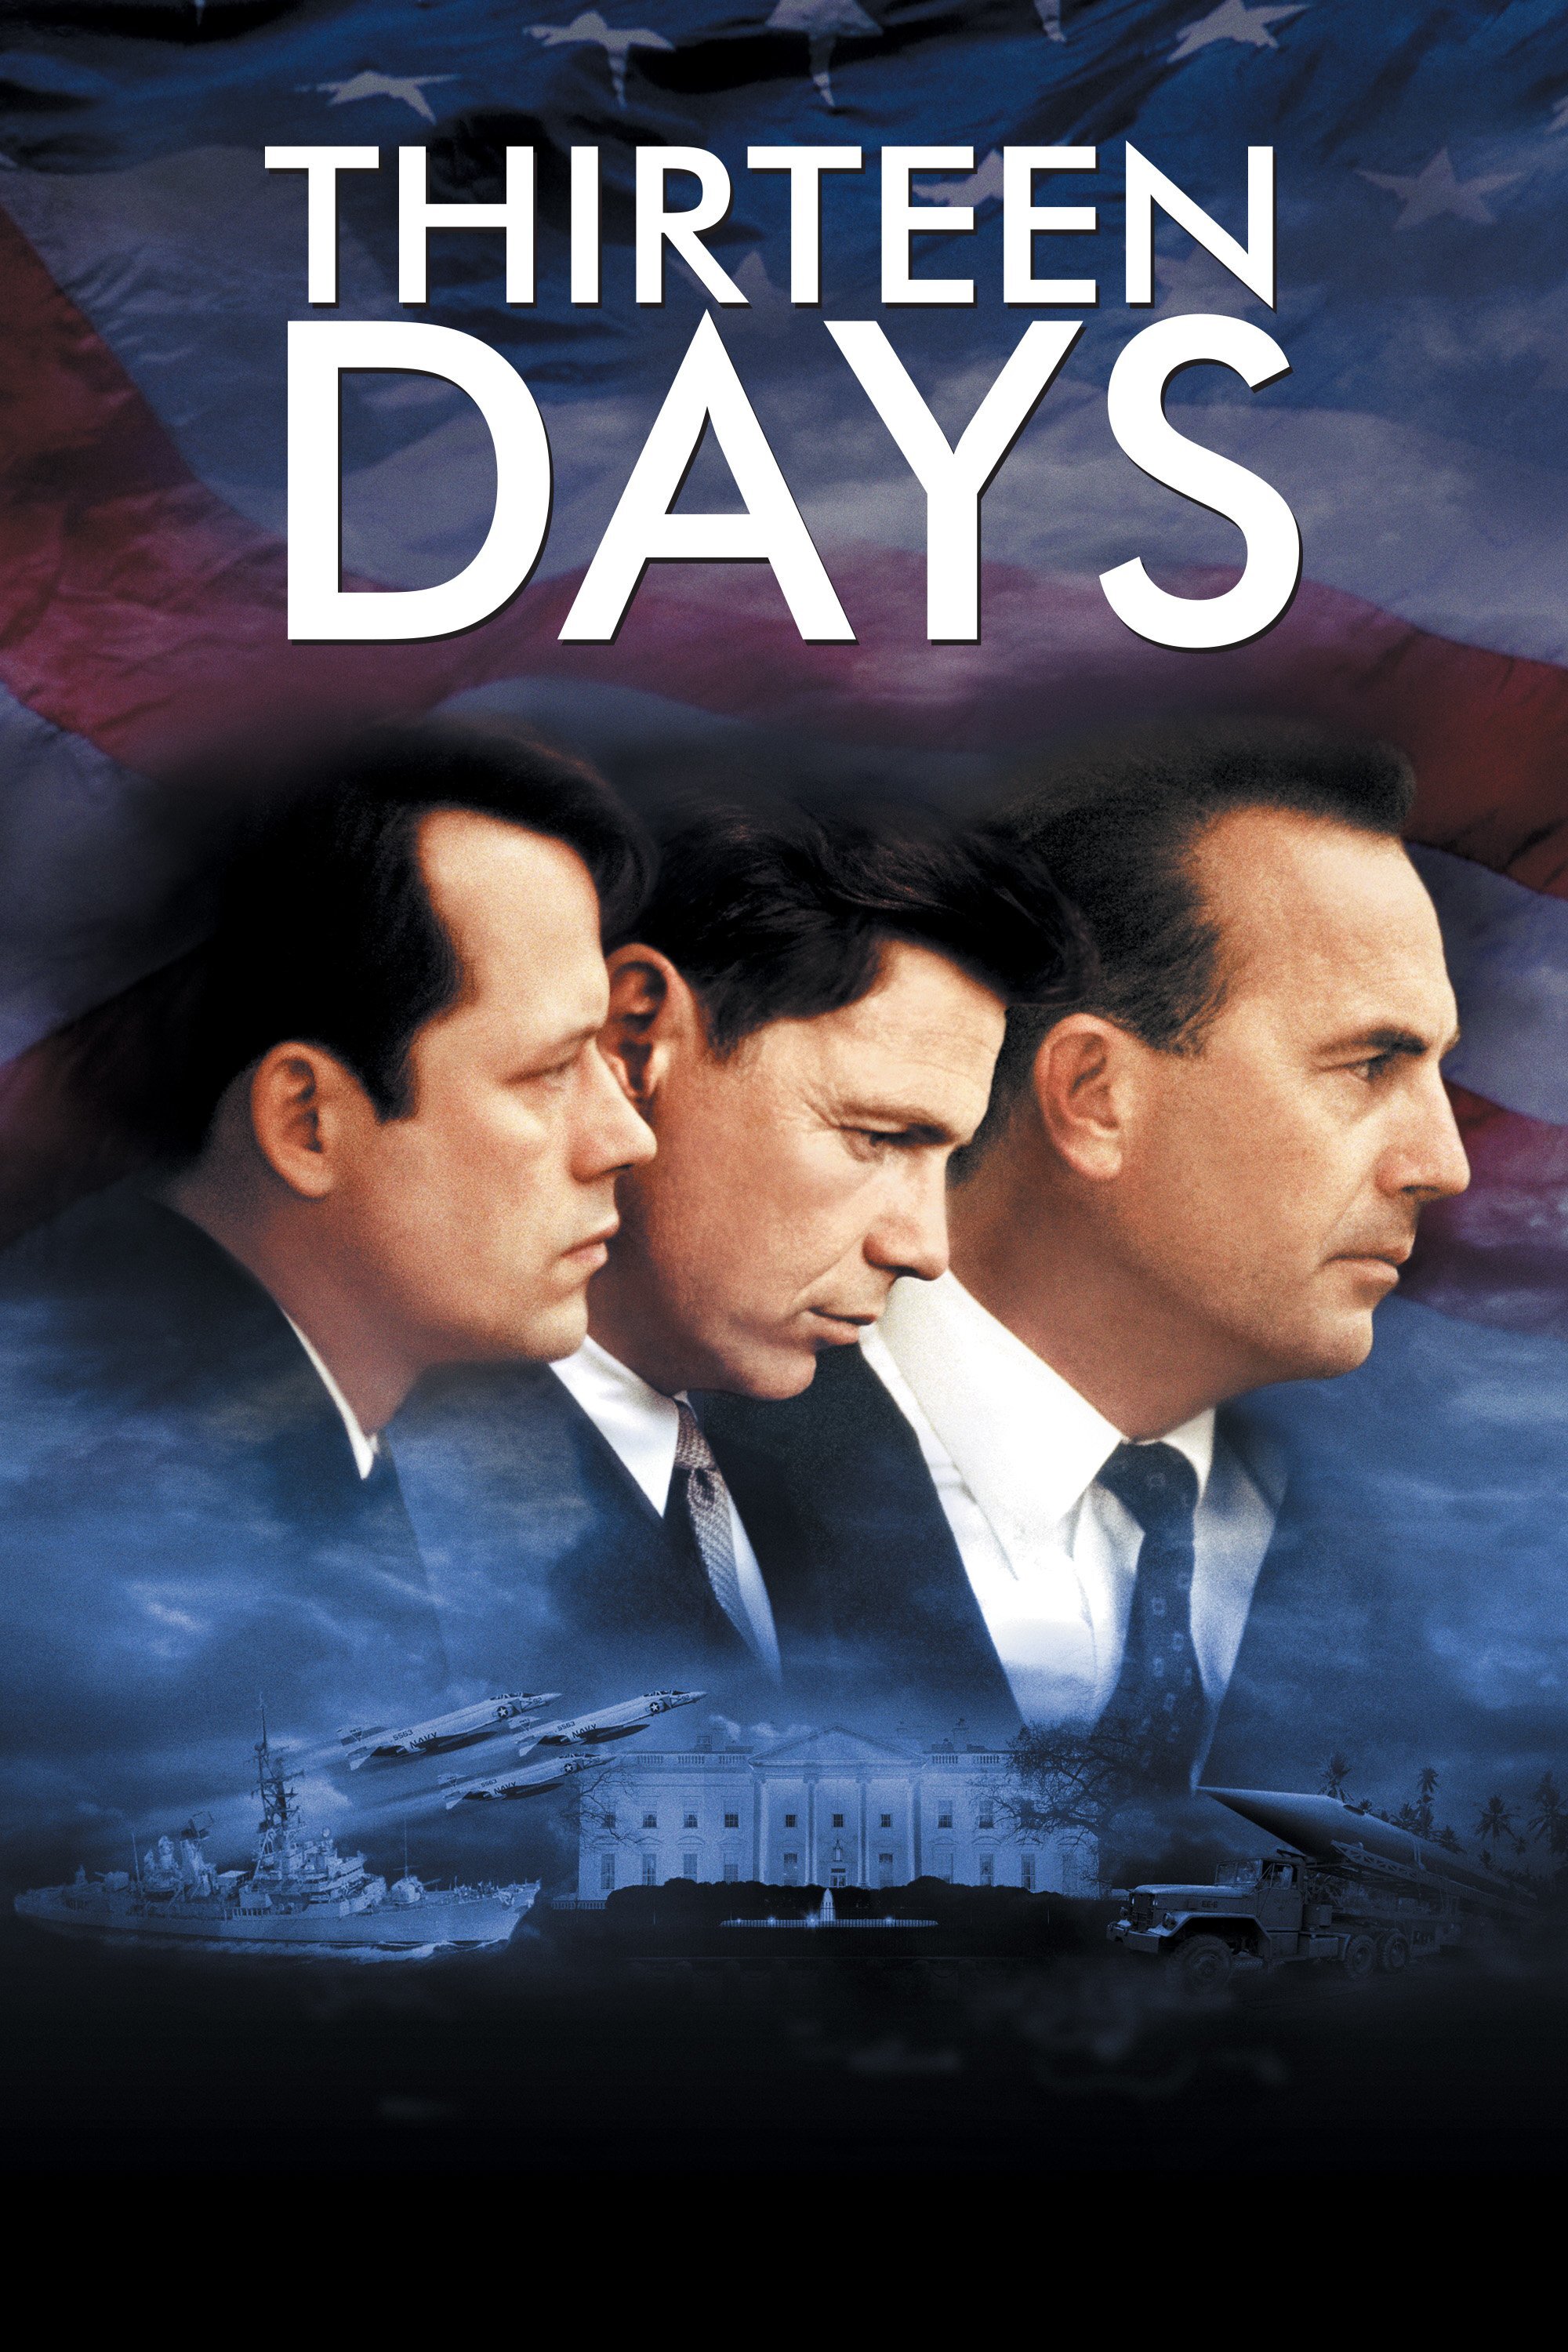 Thirteen Days (DVD Infinifilm) - DVD [ 2001 ]  - Drama Movies On DVD - Movies On GRUV